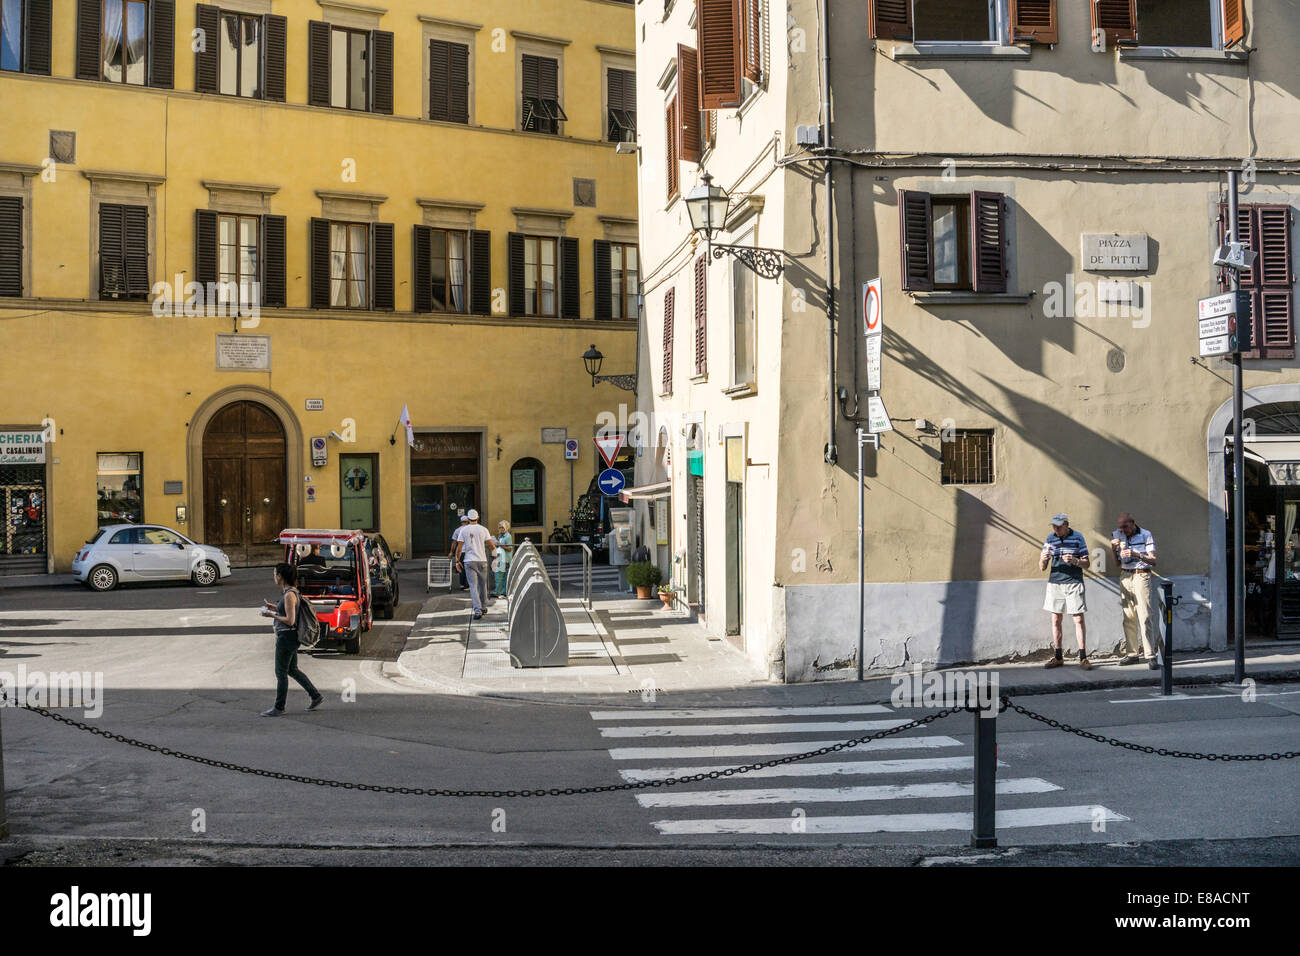 Giallo Ocra e il colore definisce lo spazio della piccola Piazza de Pitti come persone fanno il loro quotidiano di commissioni & 2 uomini anziani godono di gelato il gelato Foto Stock